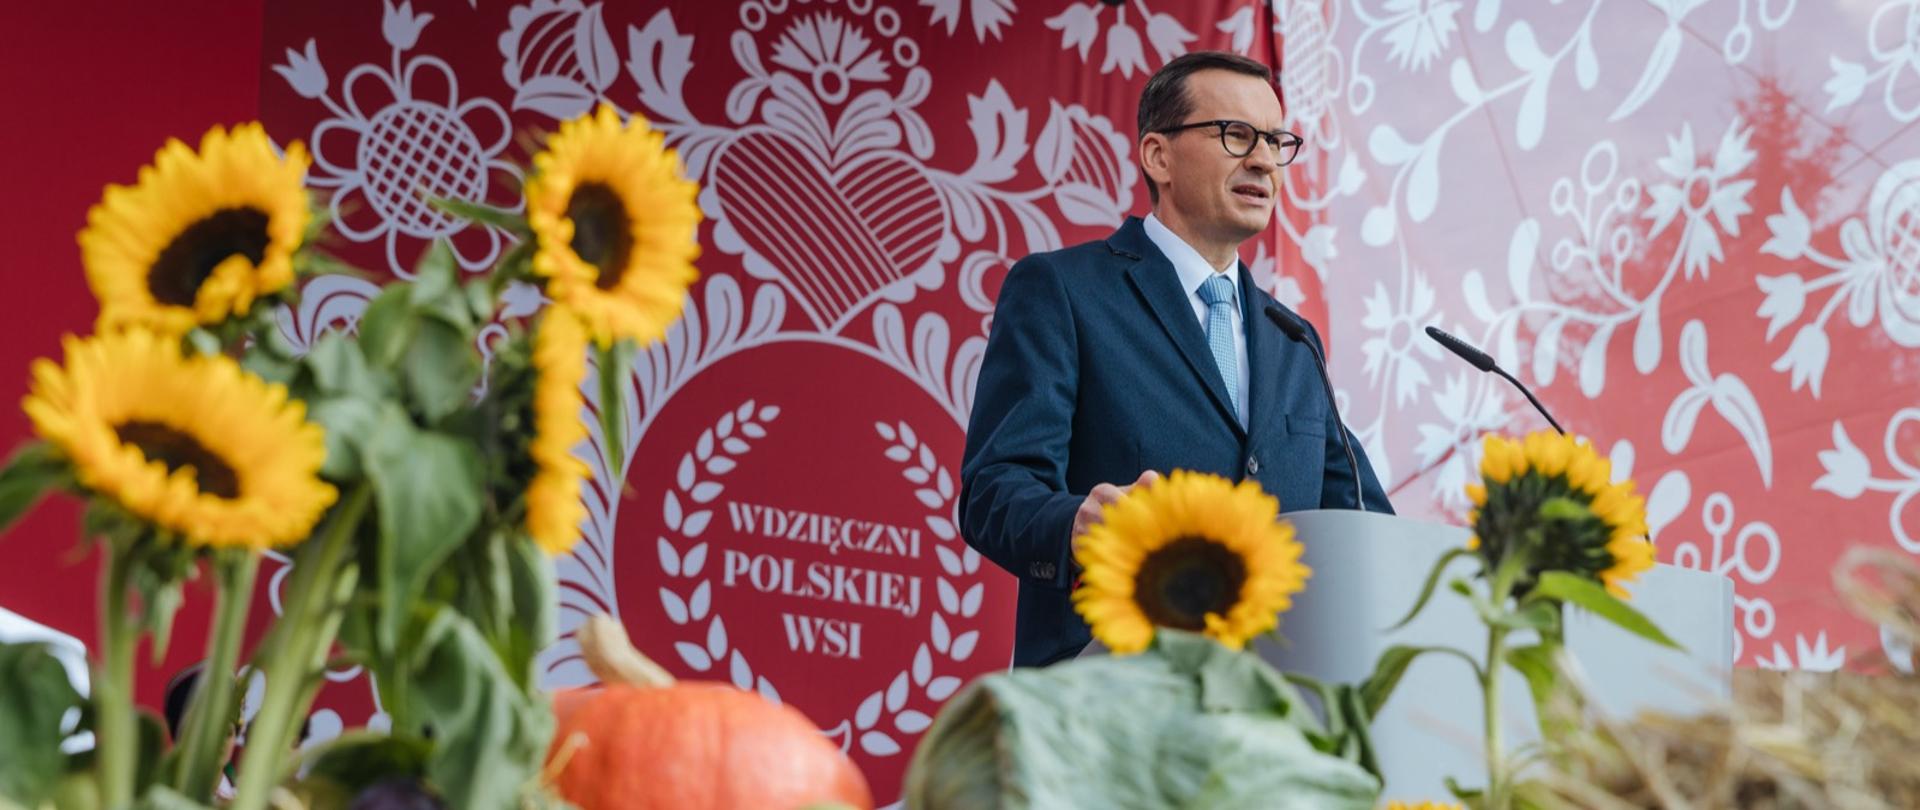 Święto Wdzięczni Polskiej Wsi